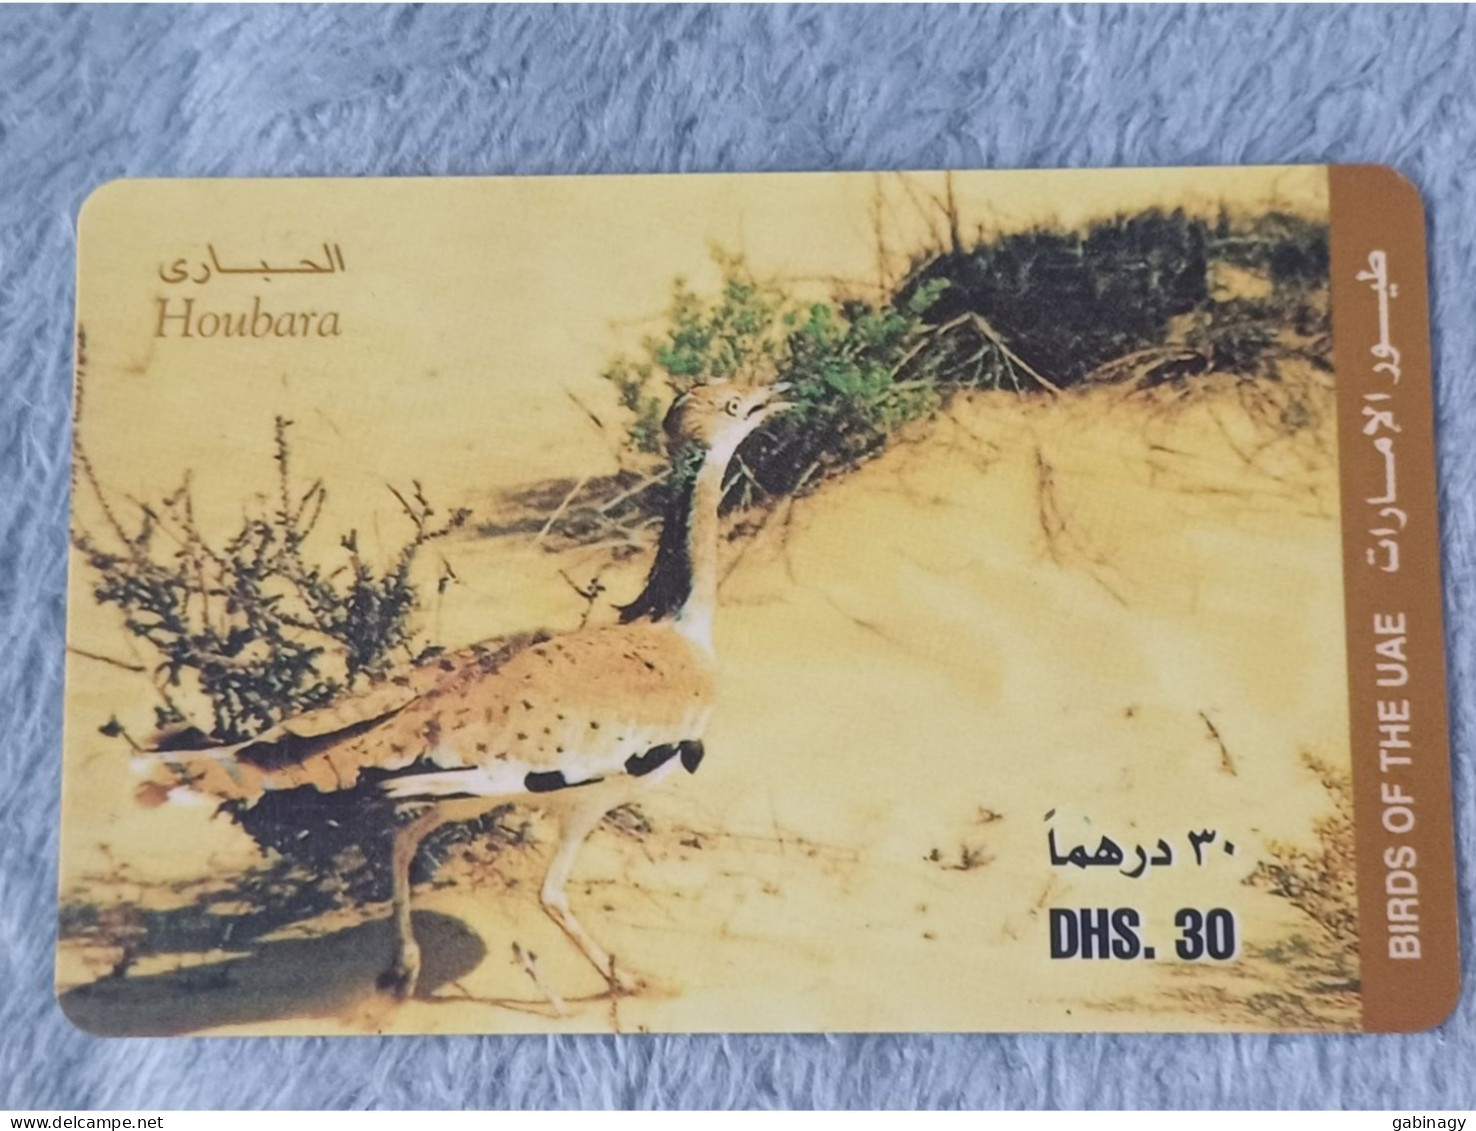 UAE - 2 CARDS OF BIRDS - Emirats Arabes Unis